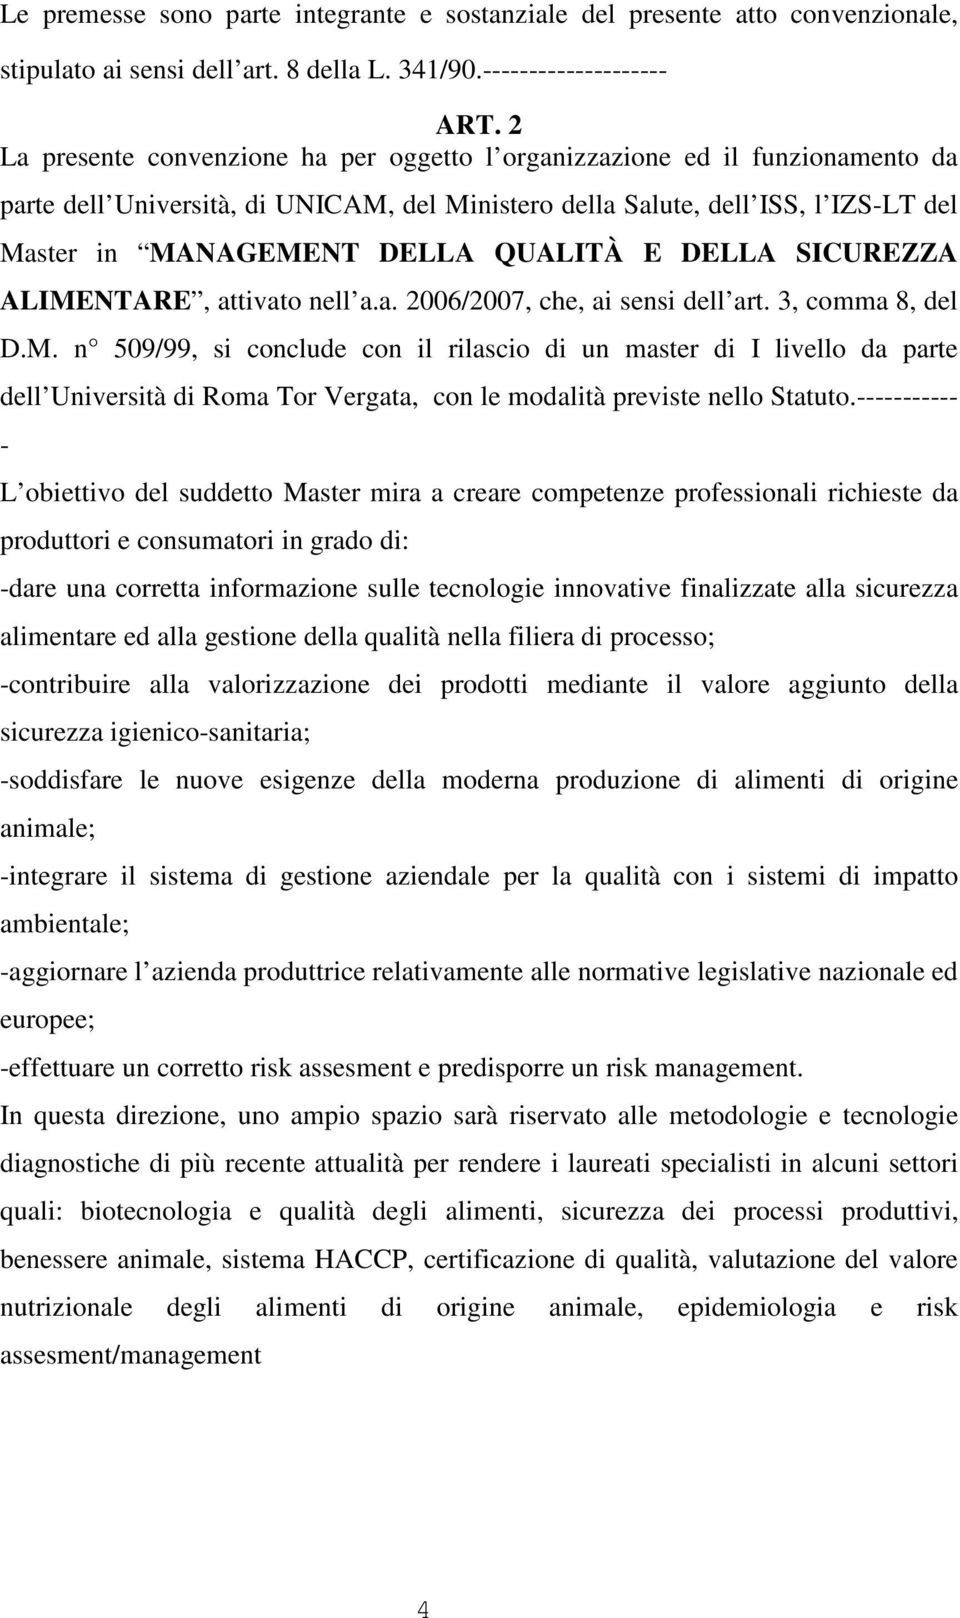 DLLA SICURZZA ALIMNTAR, attivato nell a.a. 2006/2007, che, ai sensi dell art. 3, comma 8, del D.M. n 509/99, si conclude con il rilascio di un master di I livello da parte dell Università di Roma Tor Vergata, con le modalità previste nello Statuto.